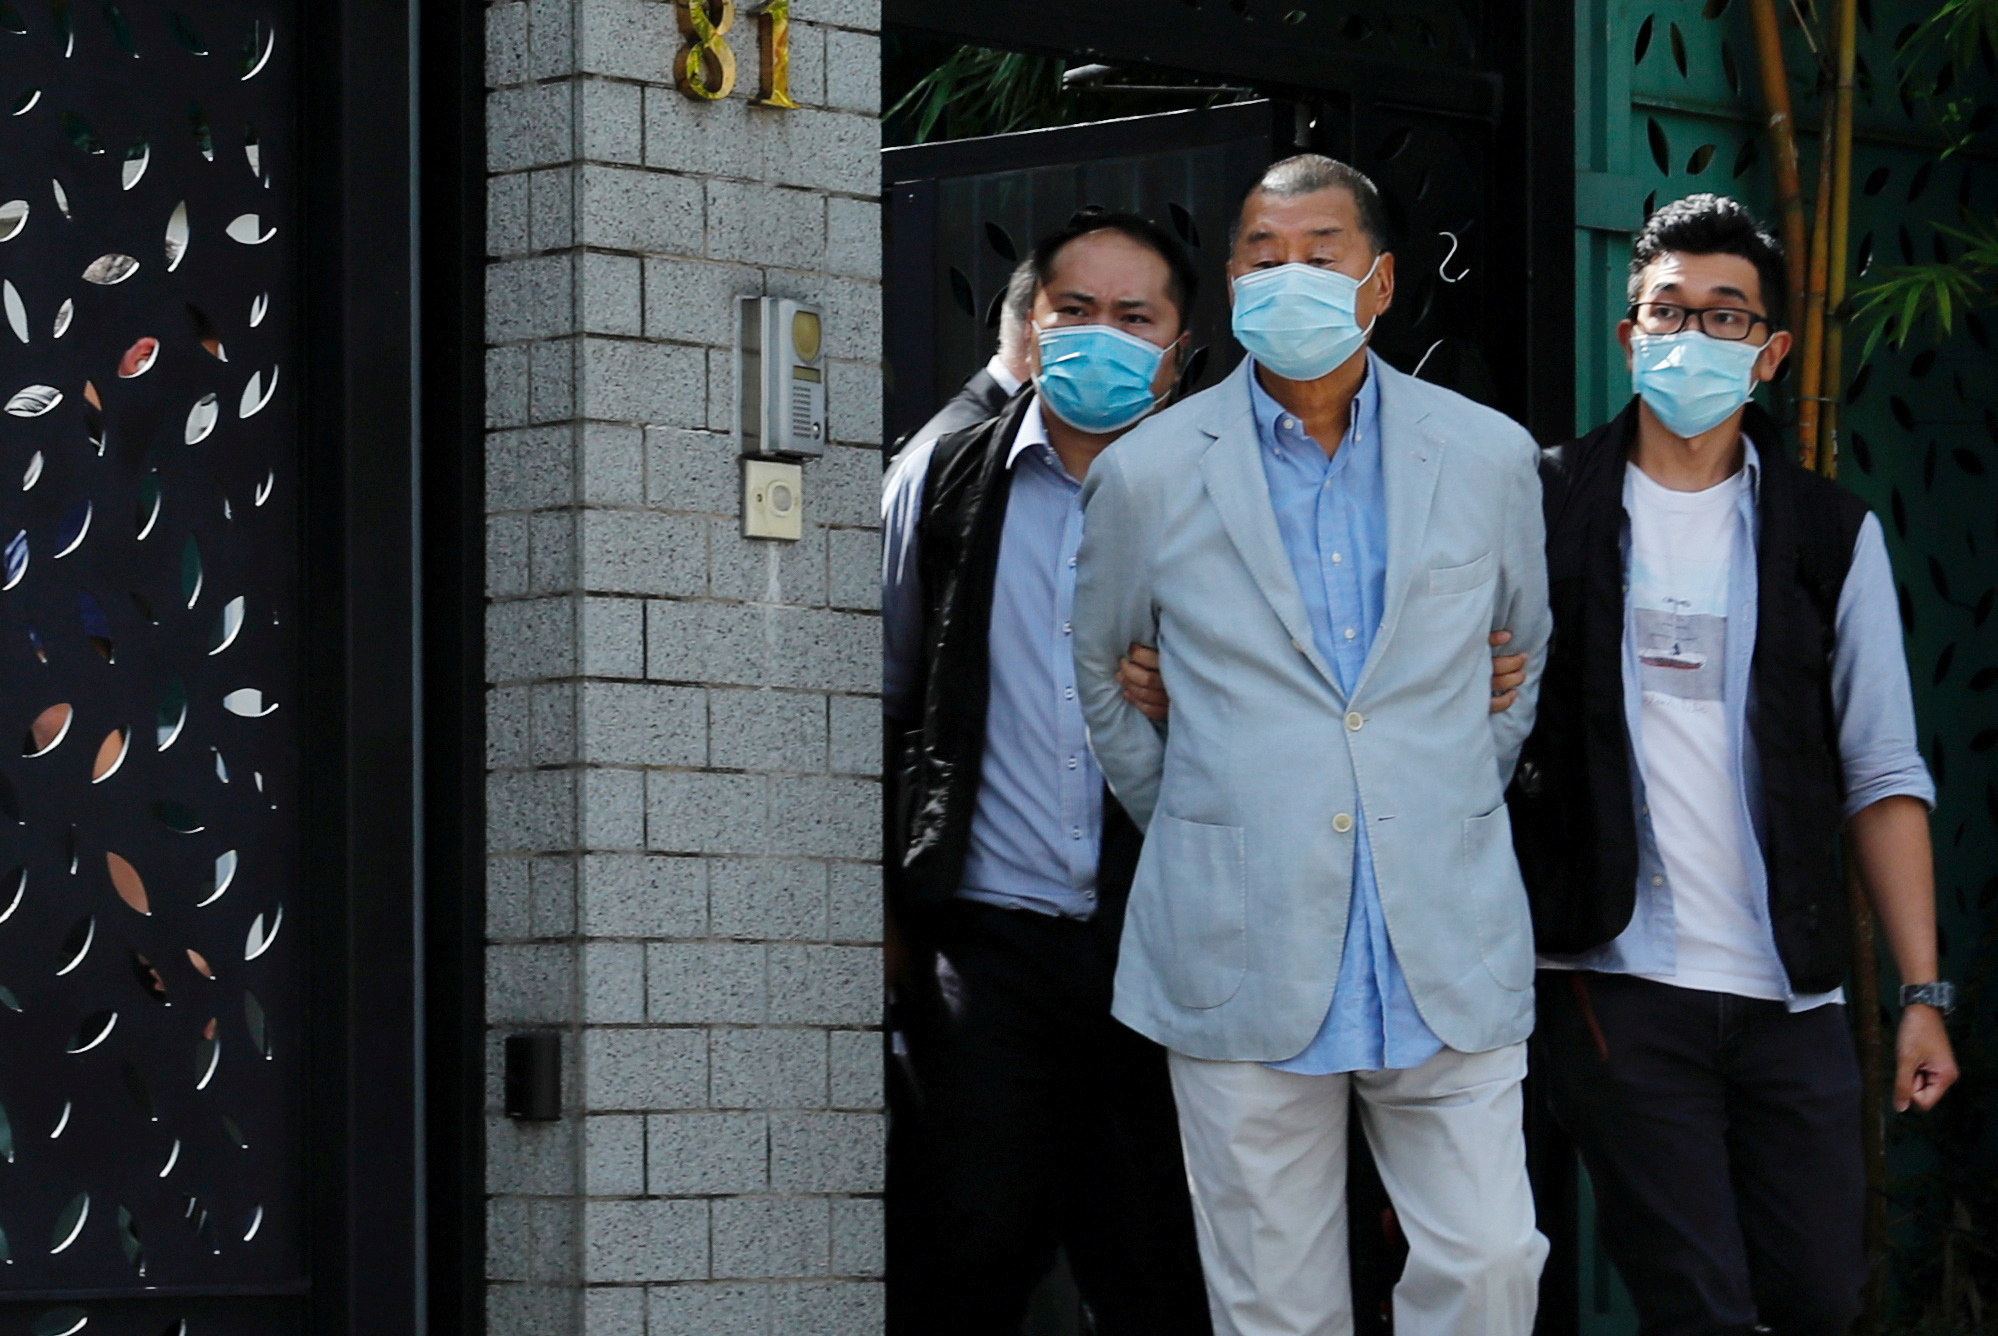 El dueño de medios de Hong Kong, Jimmy Lai, fundador de Apple Daily es detenido en la redacción en la mañana del lunes 10 de agosto (Reuters)